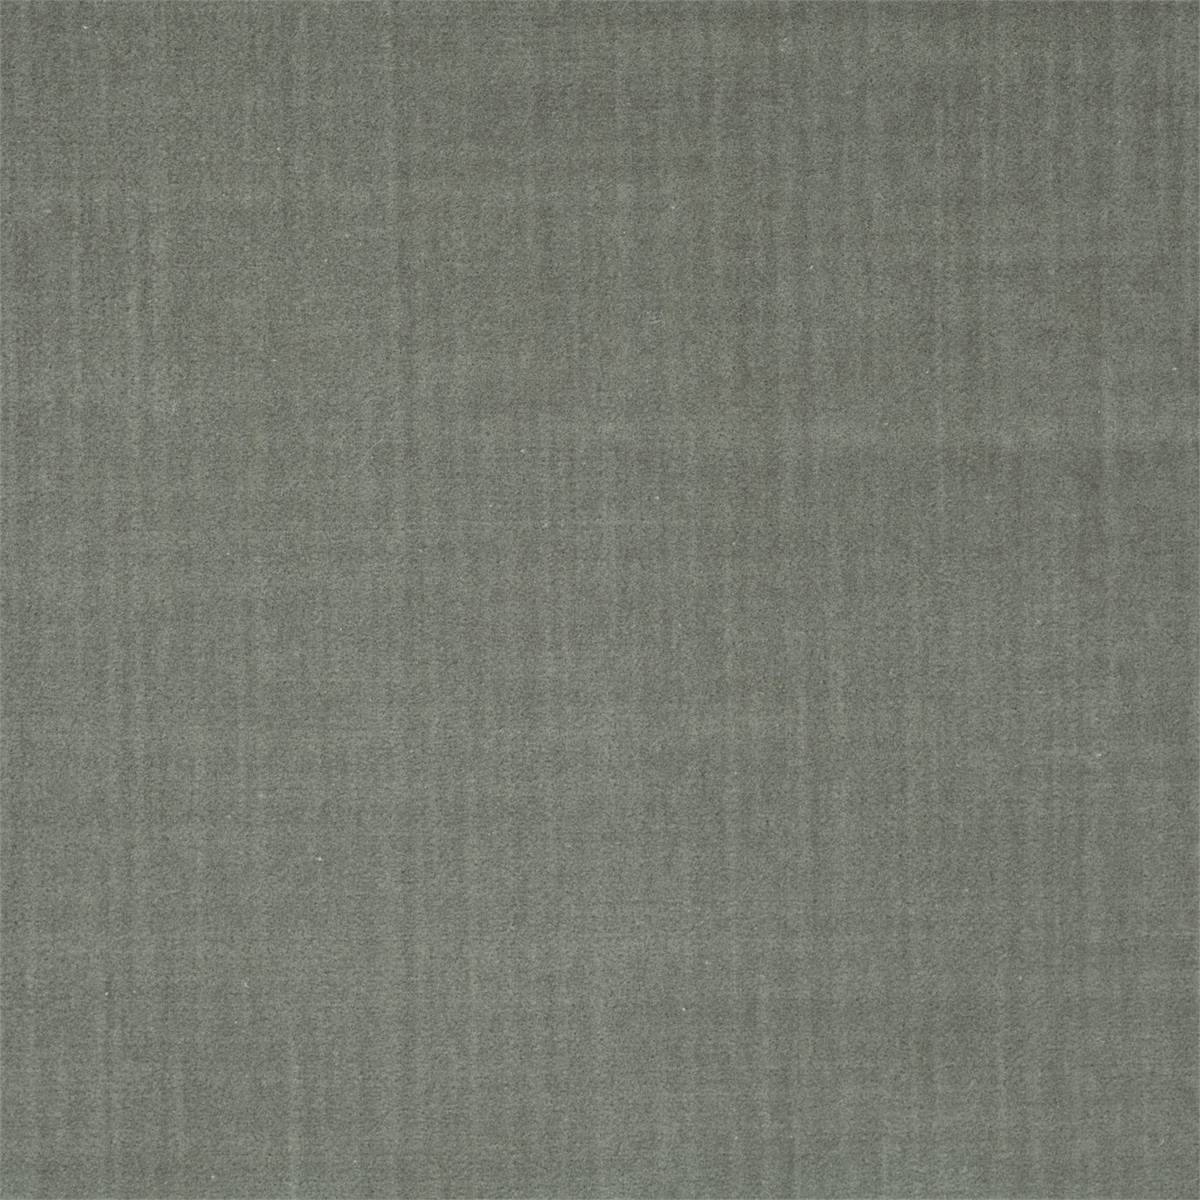 Birodo Stone Fabric by Zoffany